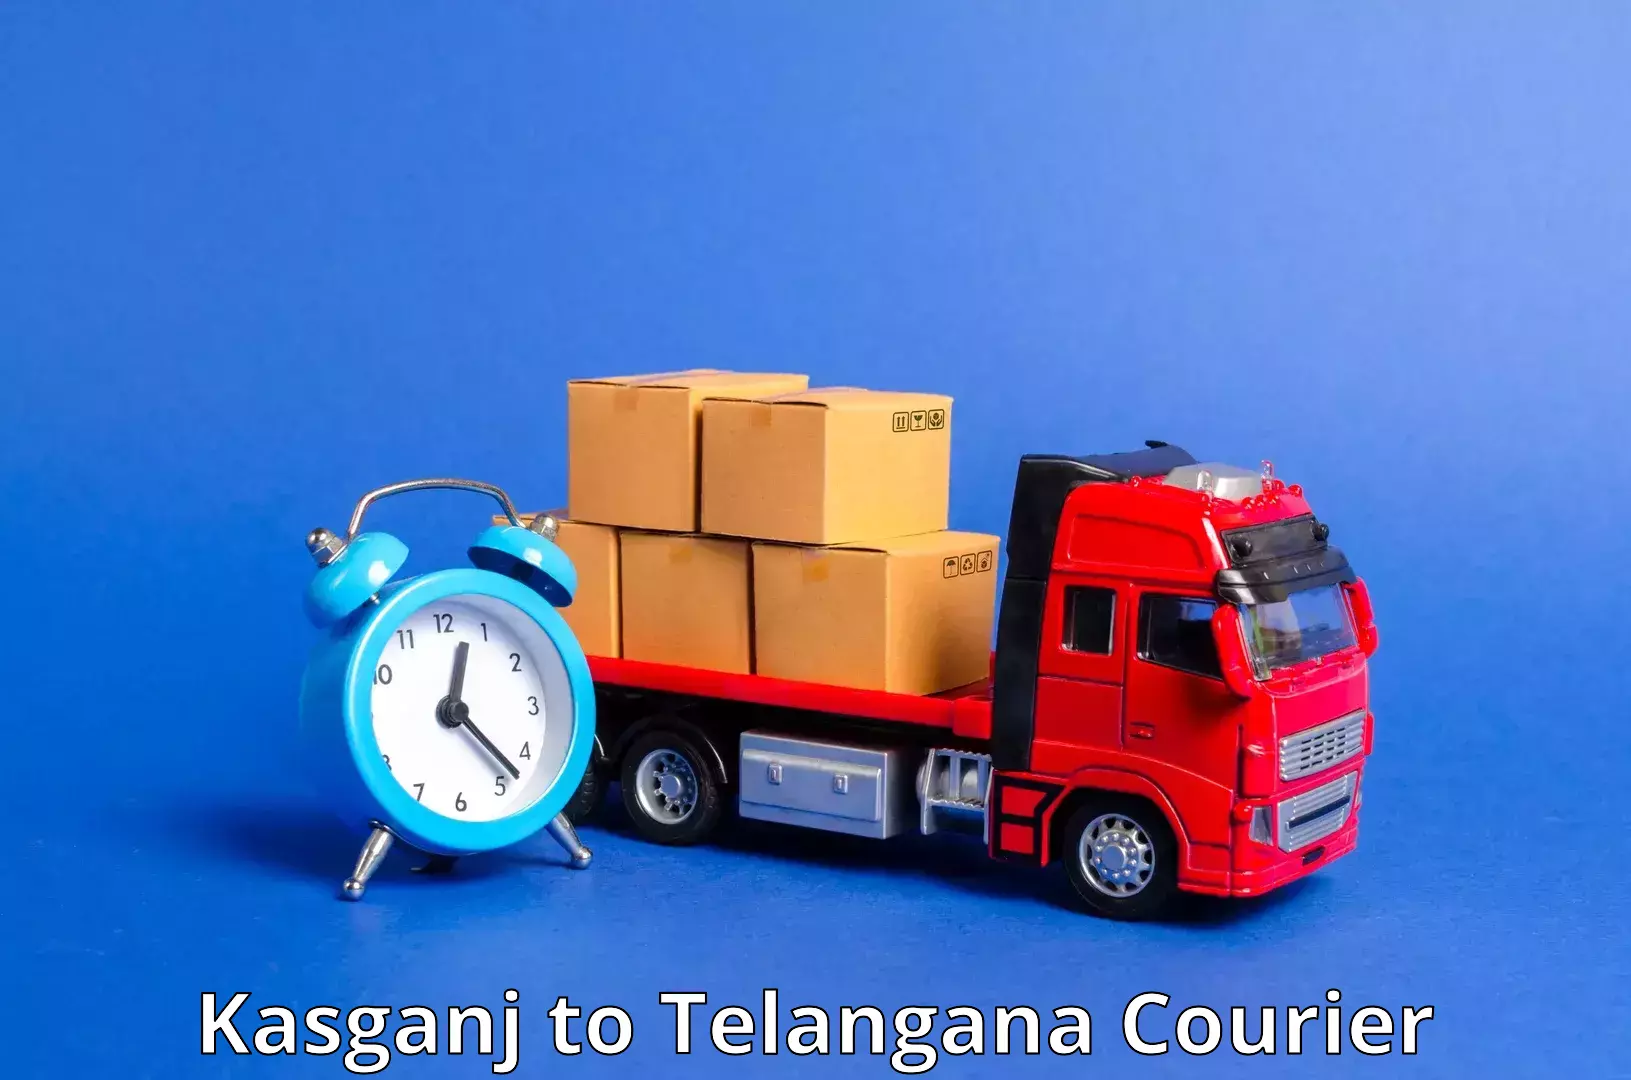 Nationwide shipping capabilities Kasganj to Mudigonda